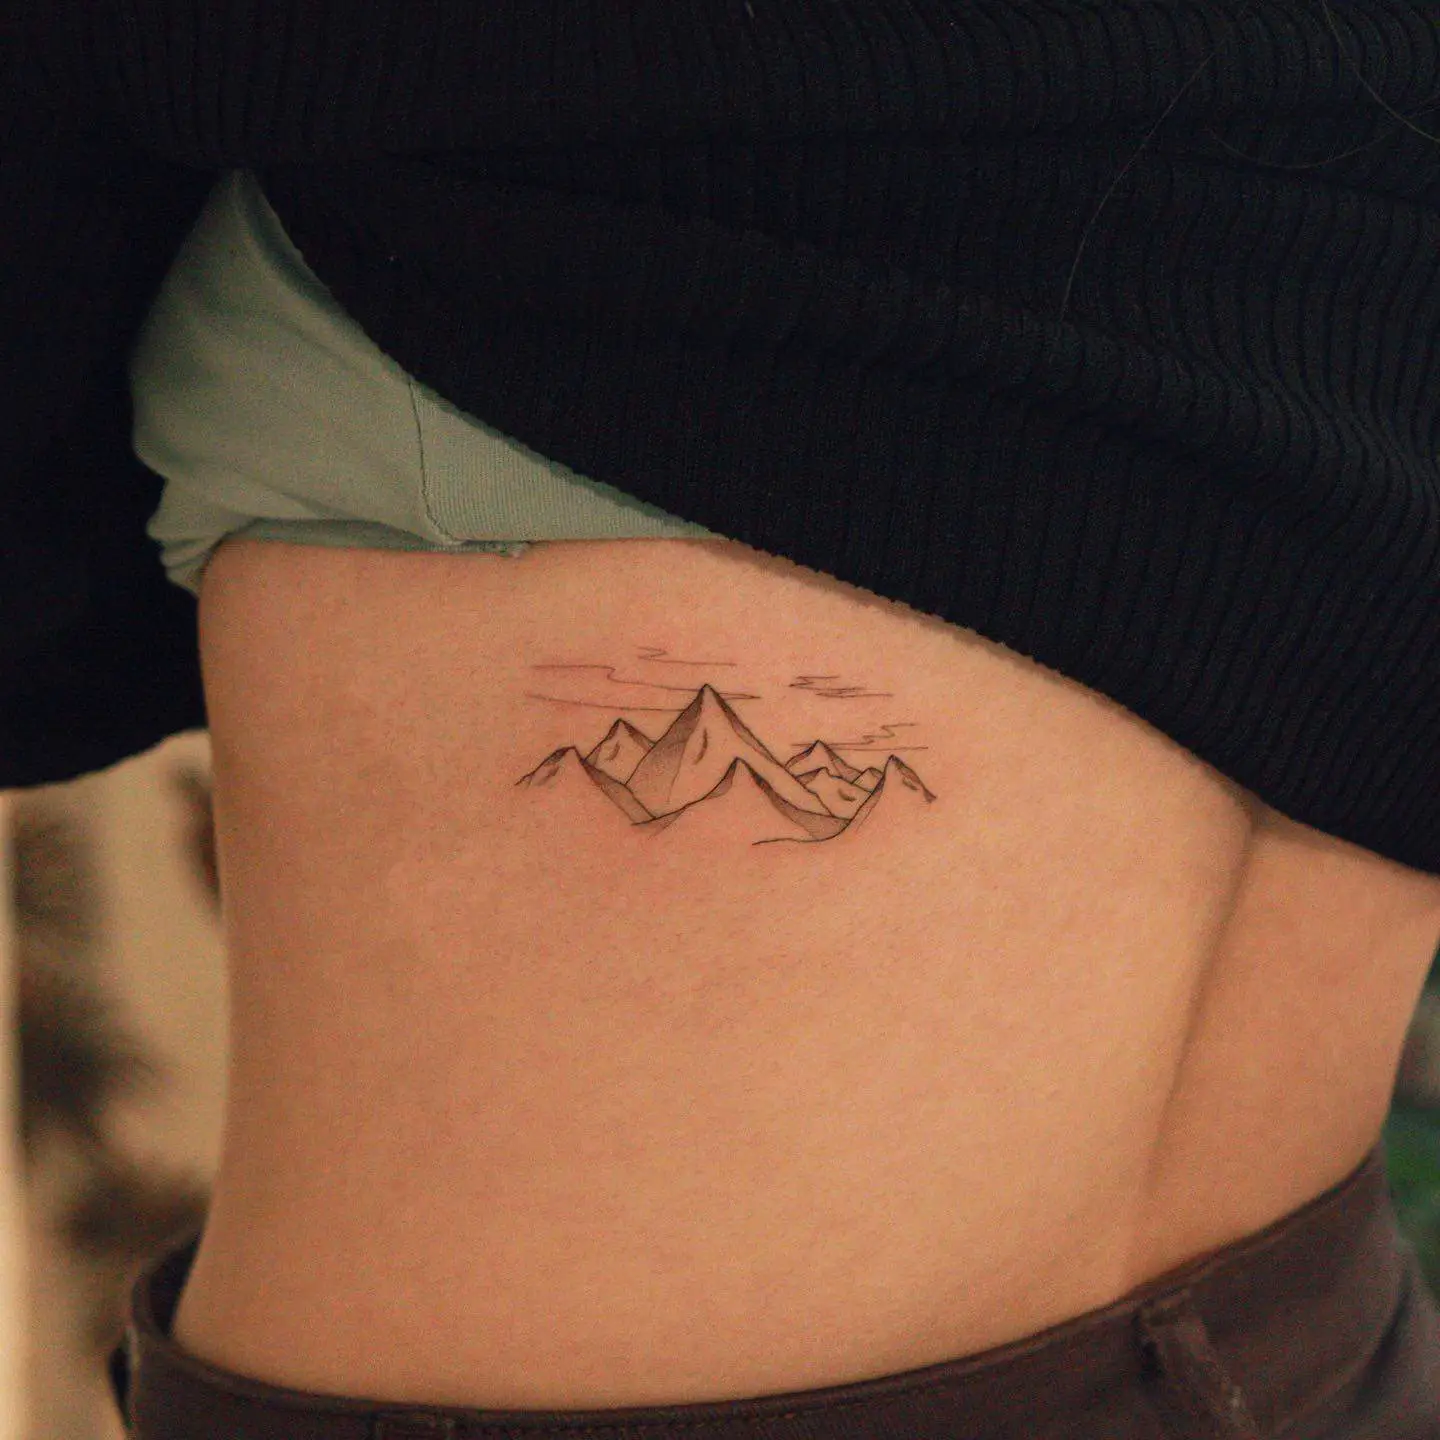 Mountain tattoo by won tattooer